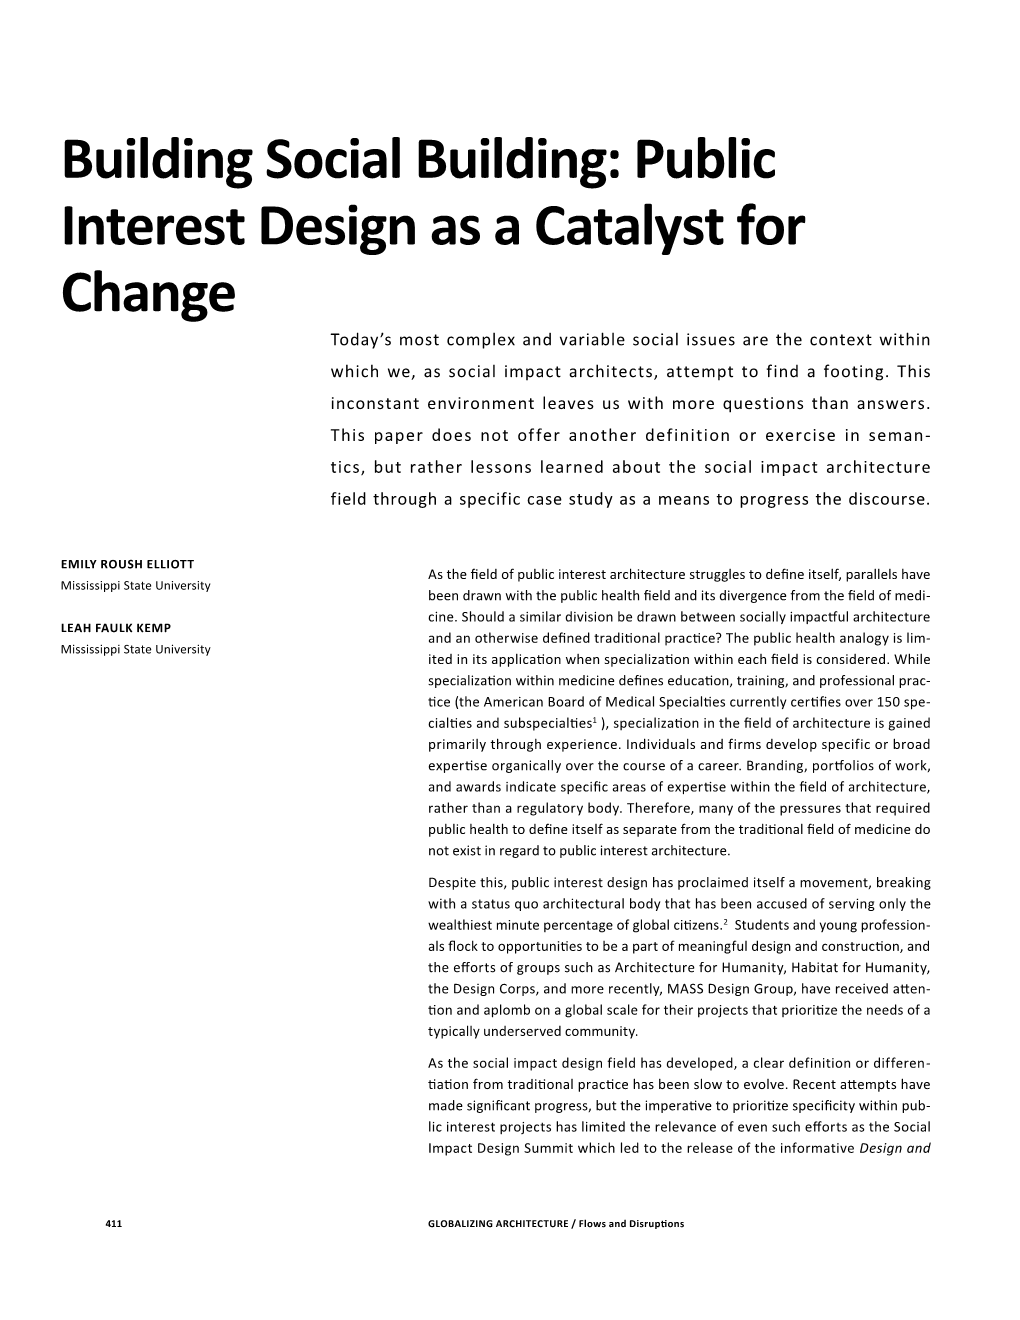 Building Social Building: Public Interest Design As a Catalyst for Change